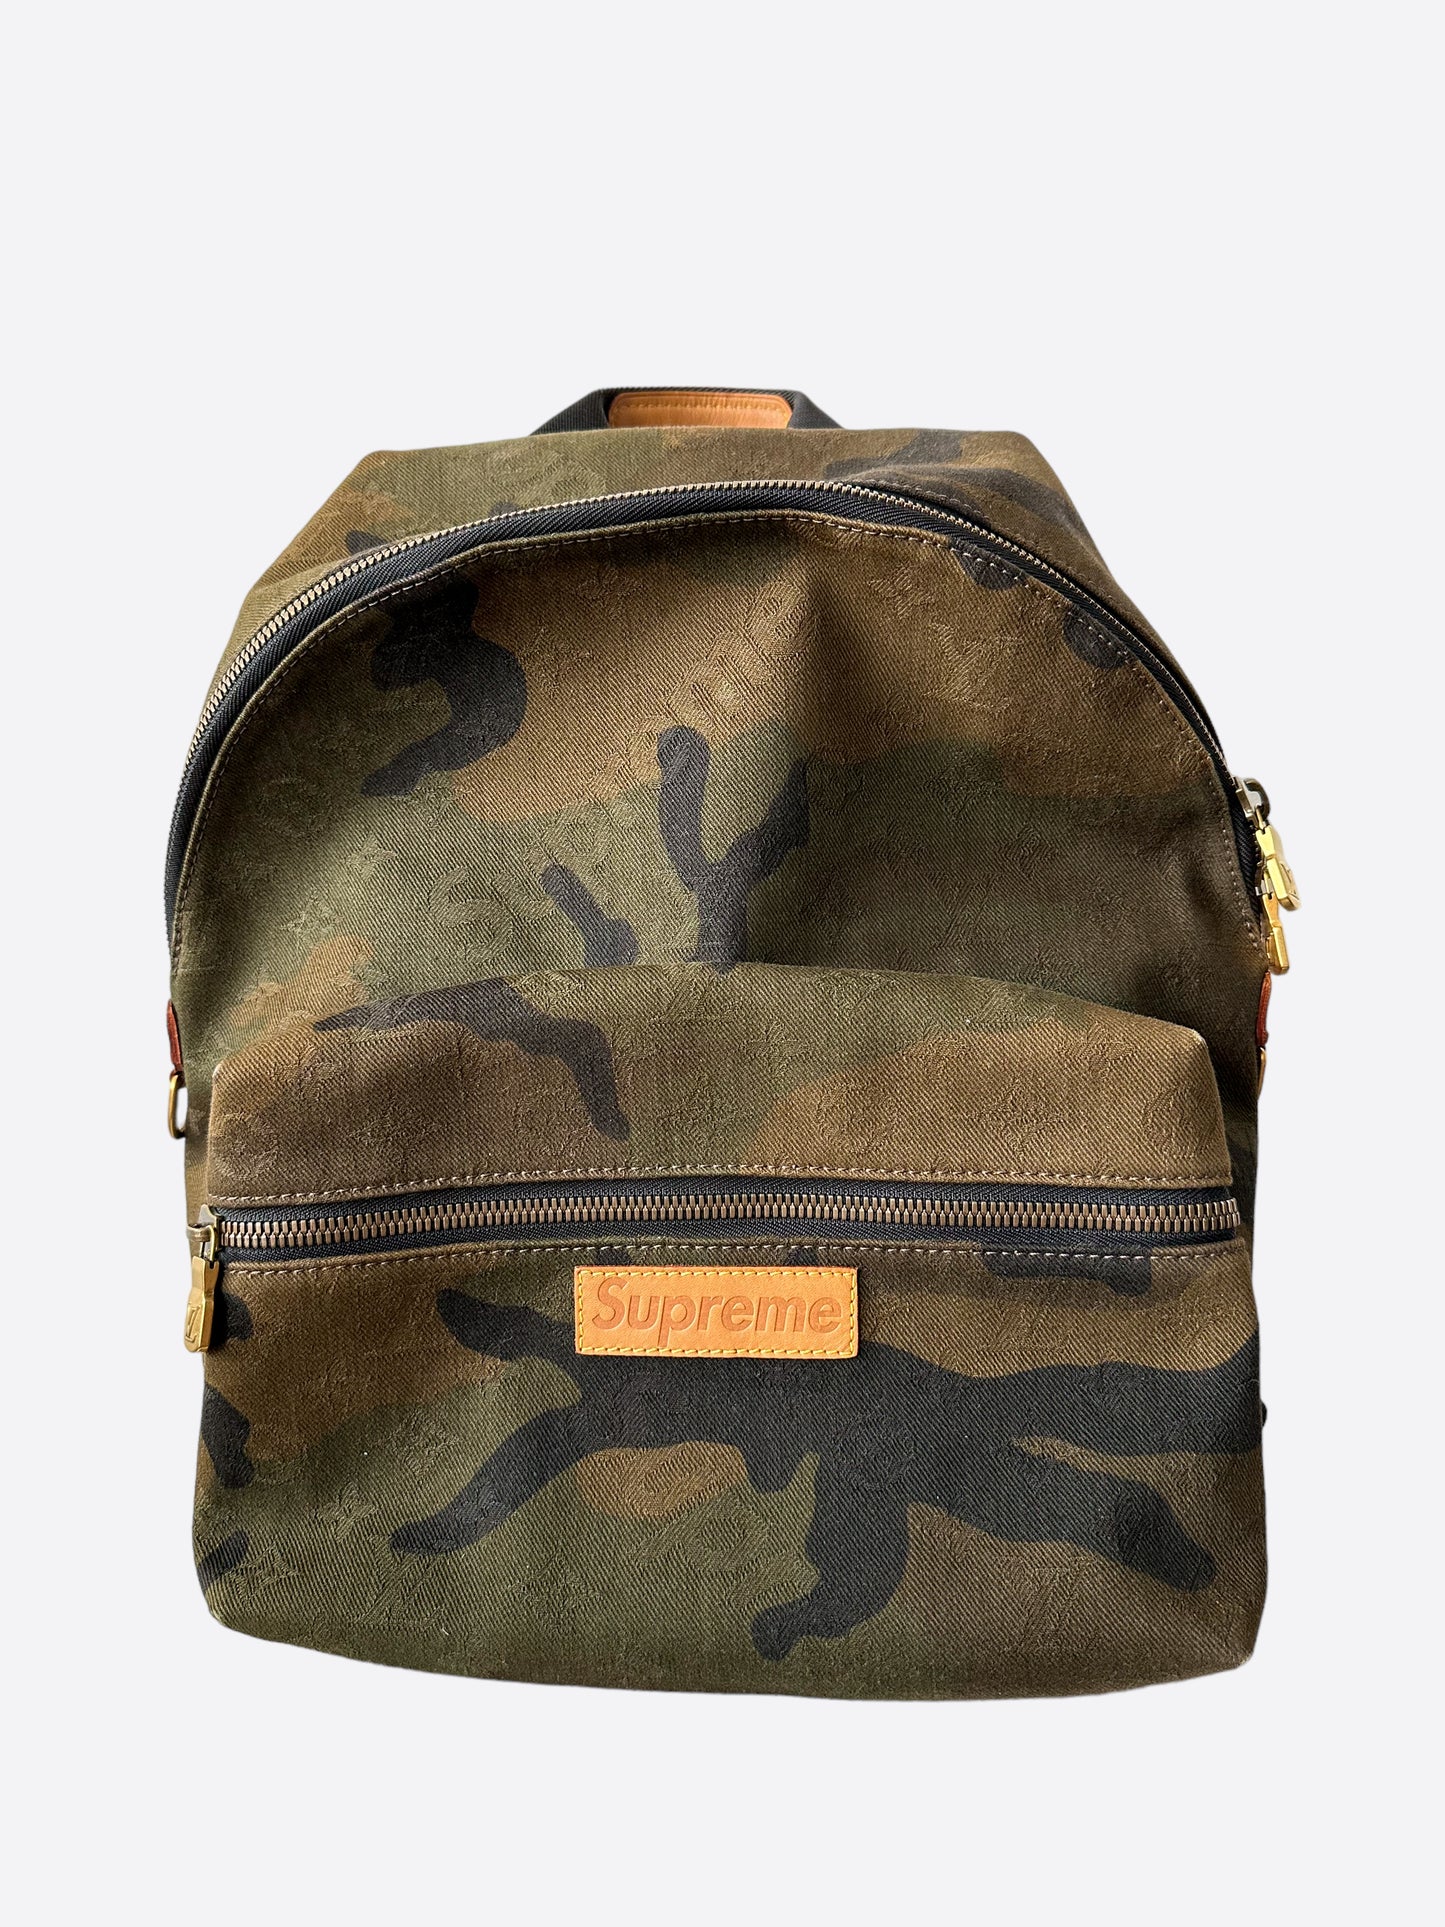 apollo backpack monogram